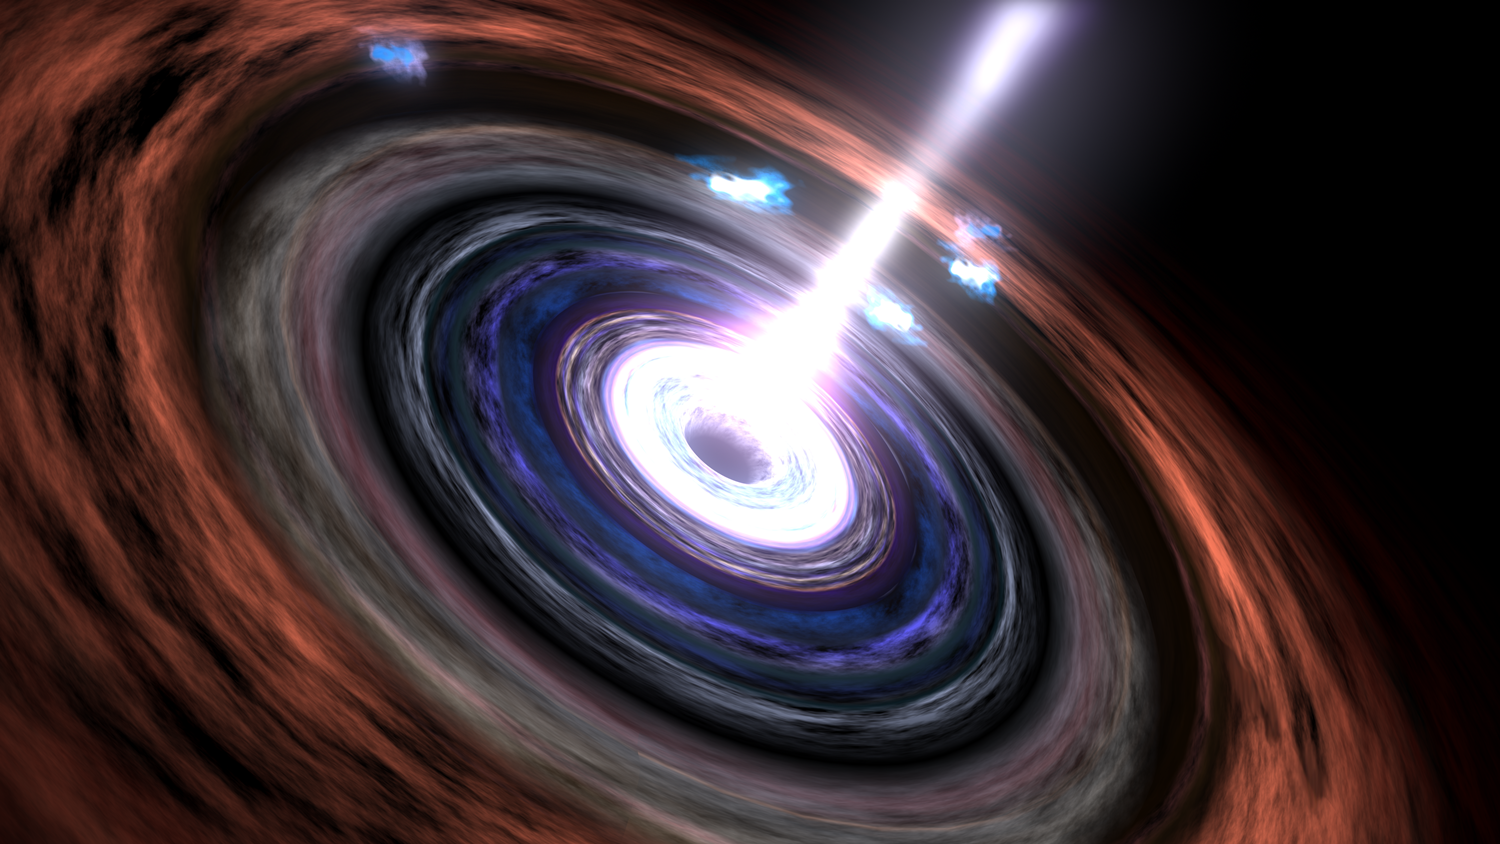 Gama zrake u aktivnoj galaktičkoj jezgri. Izvor: svs.gsfc.nasa.gov / Walt Feimer.